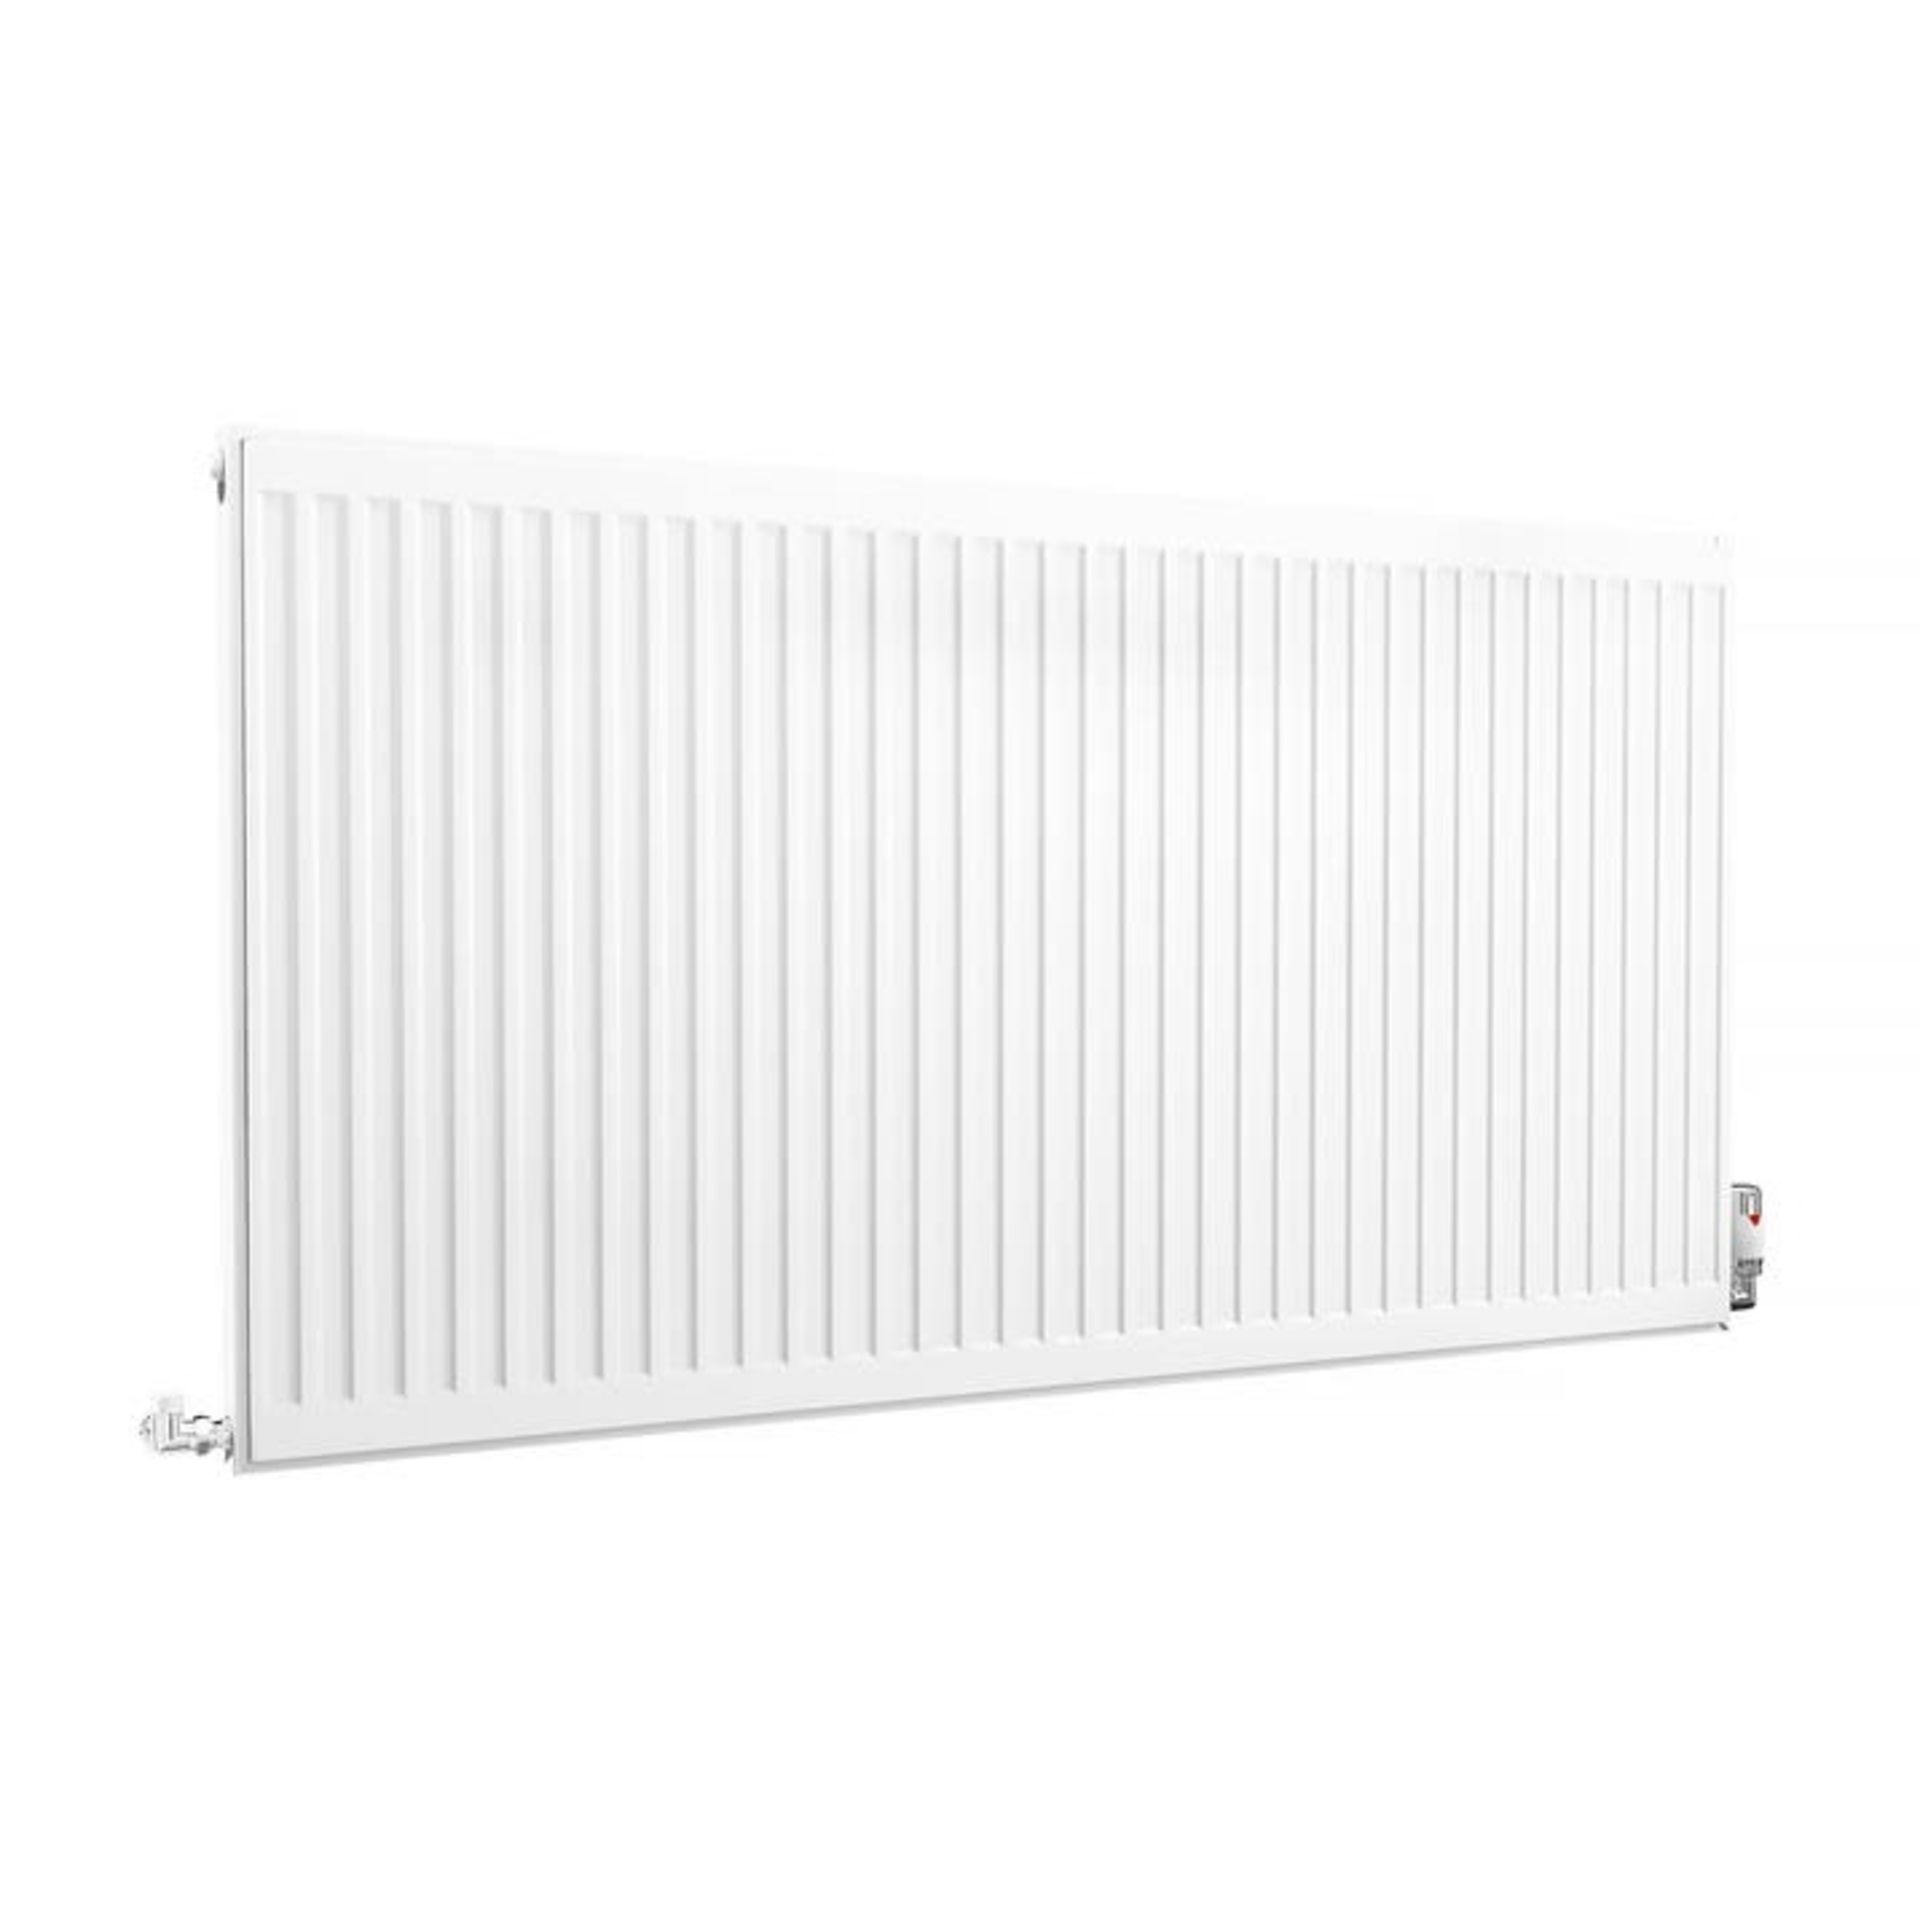 Single pannel radiator white - ER45E